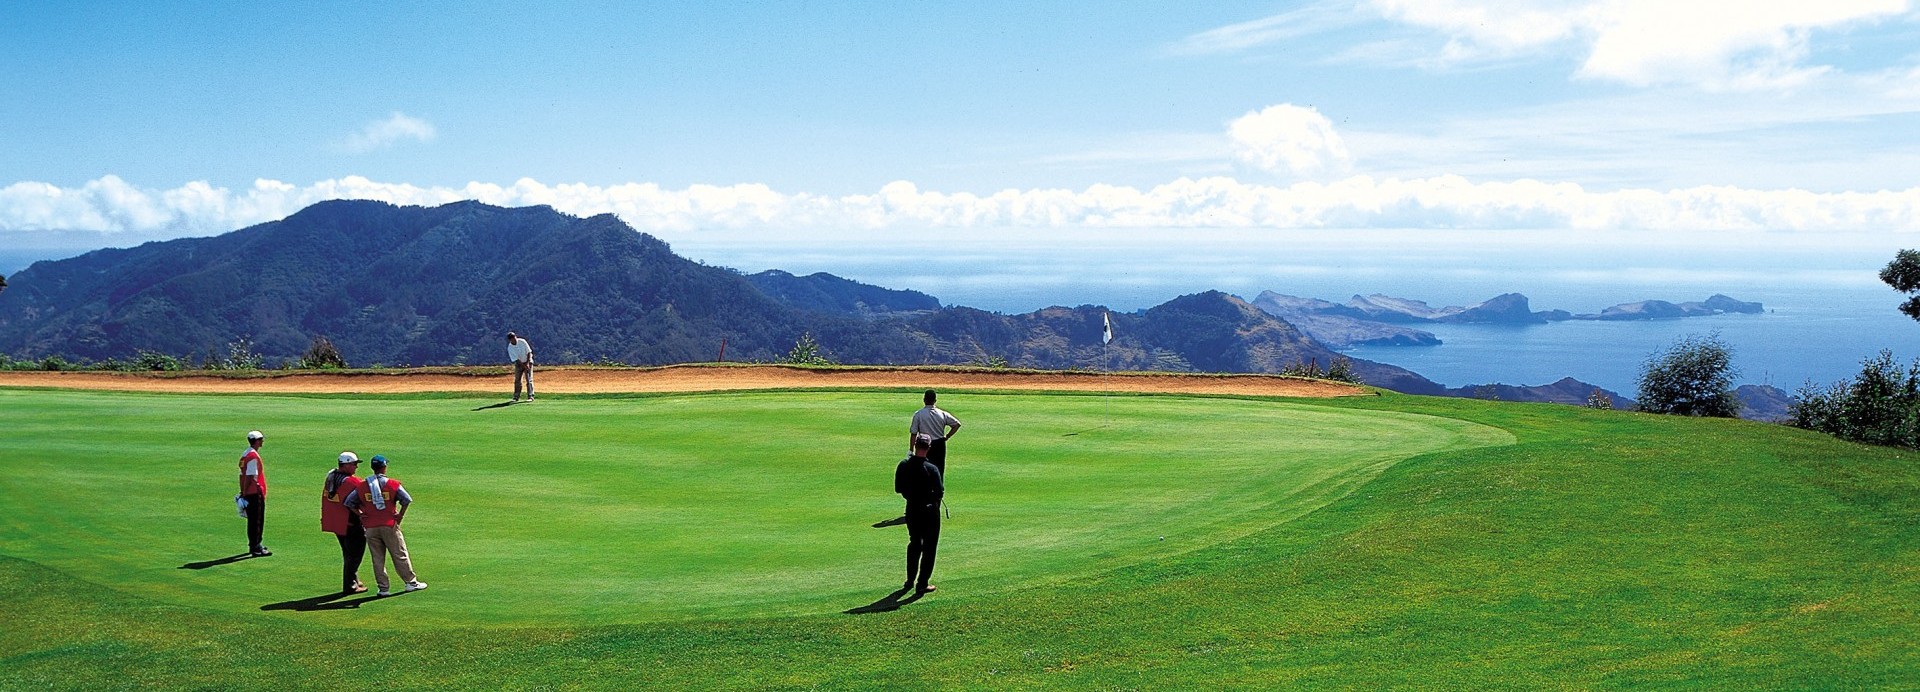 Santo da Serra Golf  | Golfové zájezdy, golfová dovolená, luxusní golf